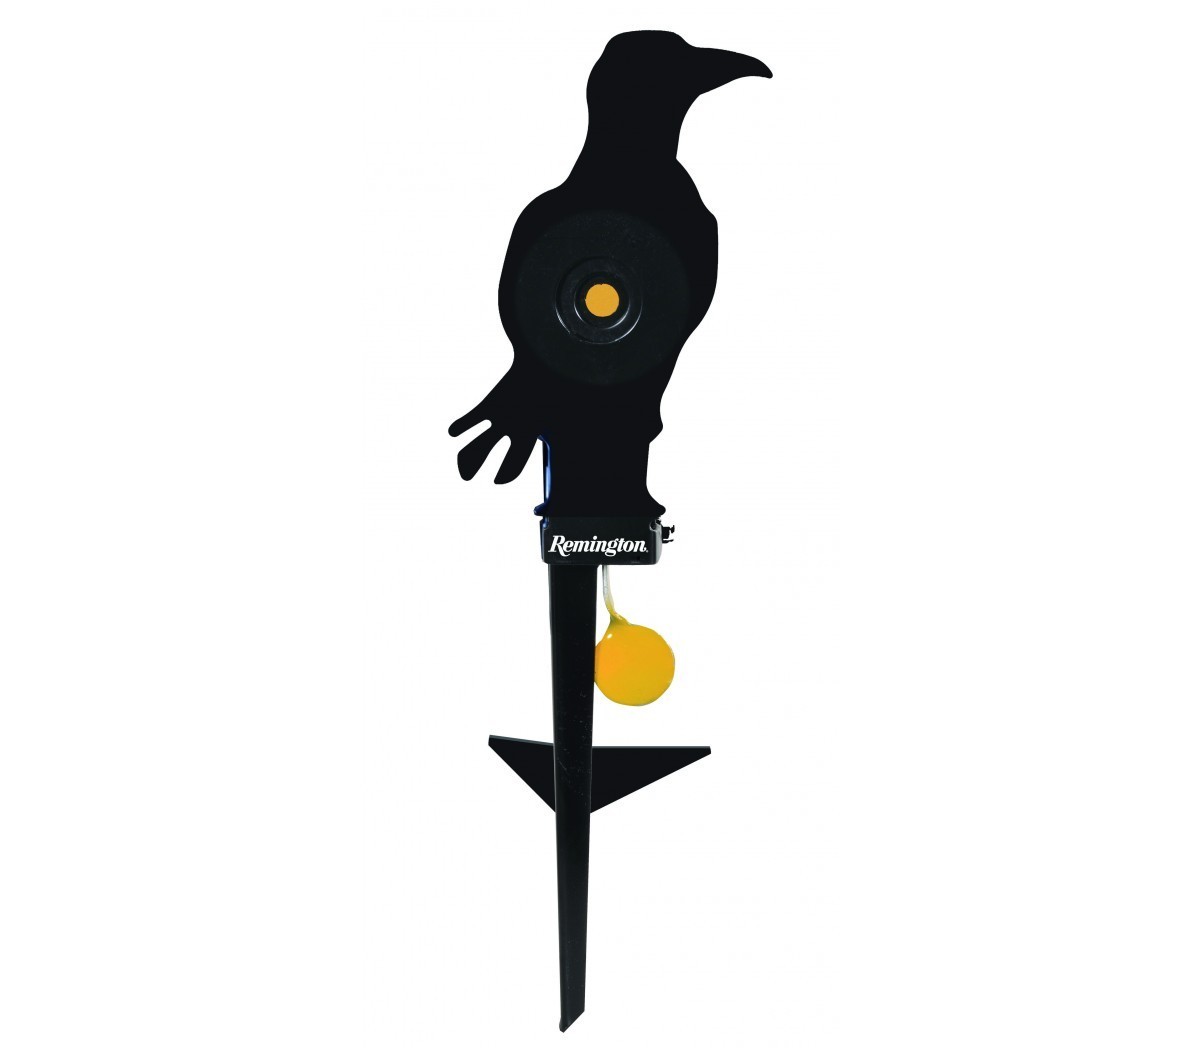 Cible basculante corbeau - Remington